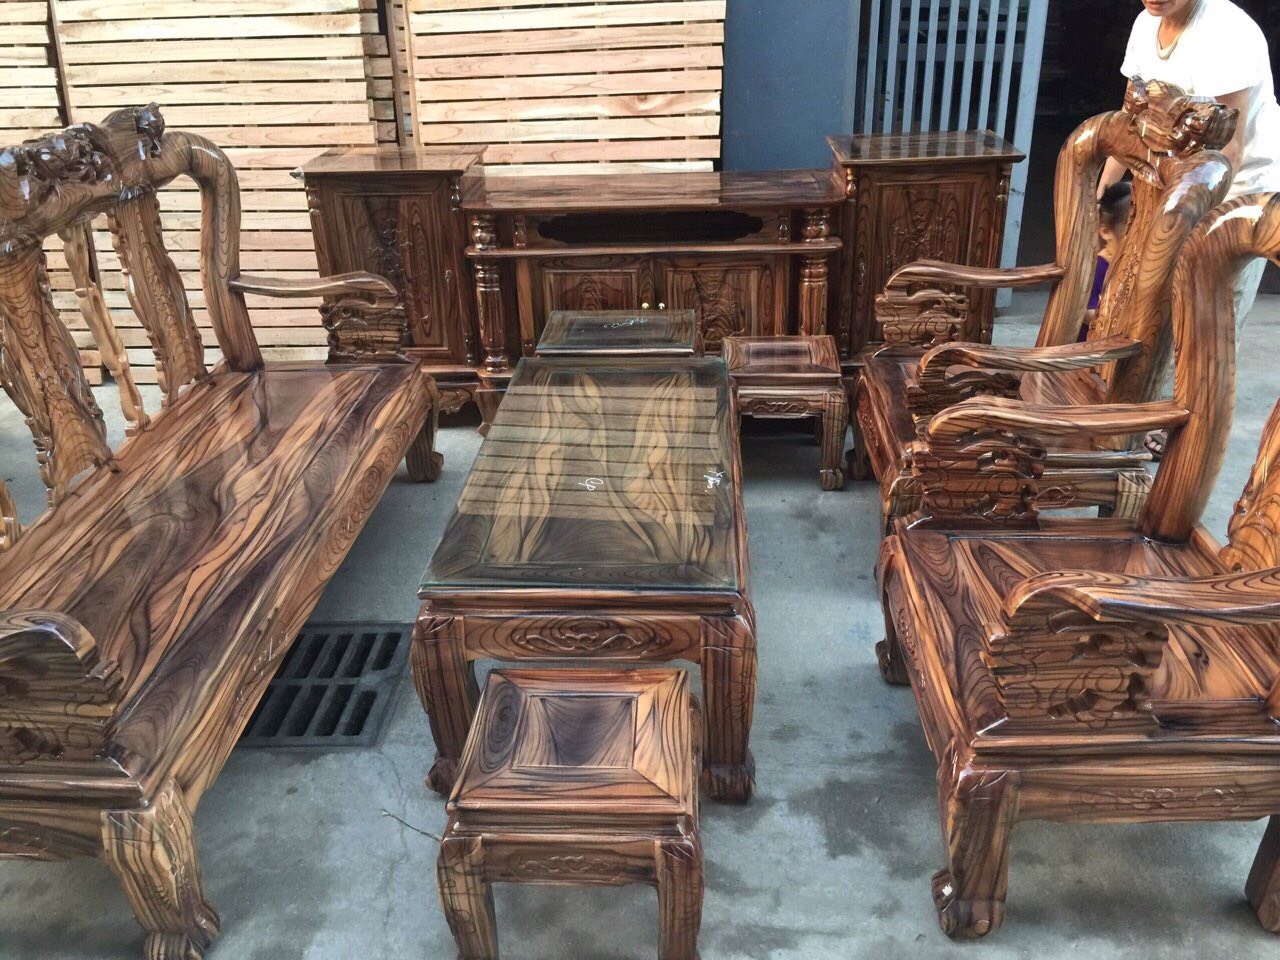 Nếu bạn muốn mua những bộ đồ nội thất gỗ giá rẻ nhưng vẫn đảm bảo được chất lượng và tính thẩm mỹ, hãy nhanh tay chọn lựa bộ bàn ghế gỗ giá rẻ dưới 10 triệu đồng tại đây. Với nhiều mẫu mã đa dạng, bạn sẽ có nhiều sự lựa chọn phong phú để trang trí lại không gian sống của mình.